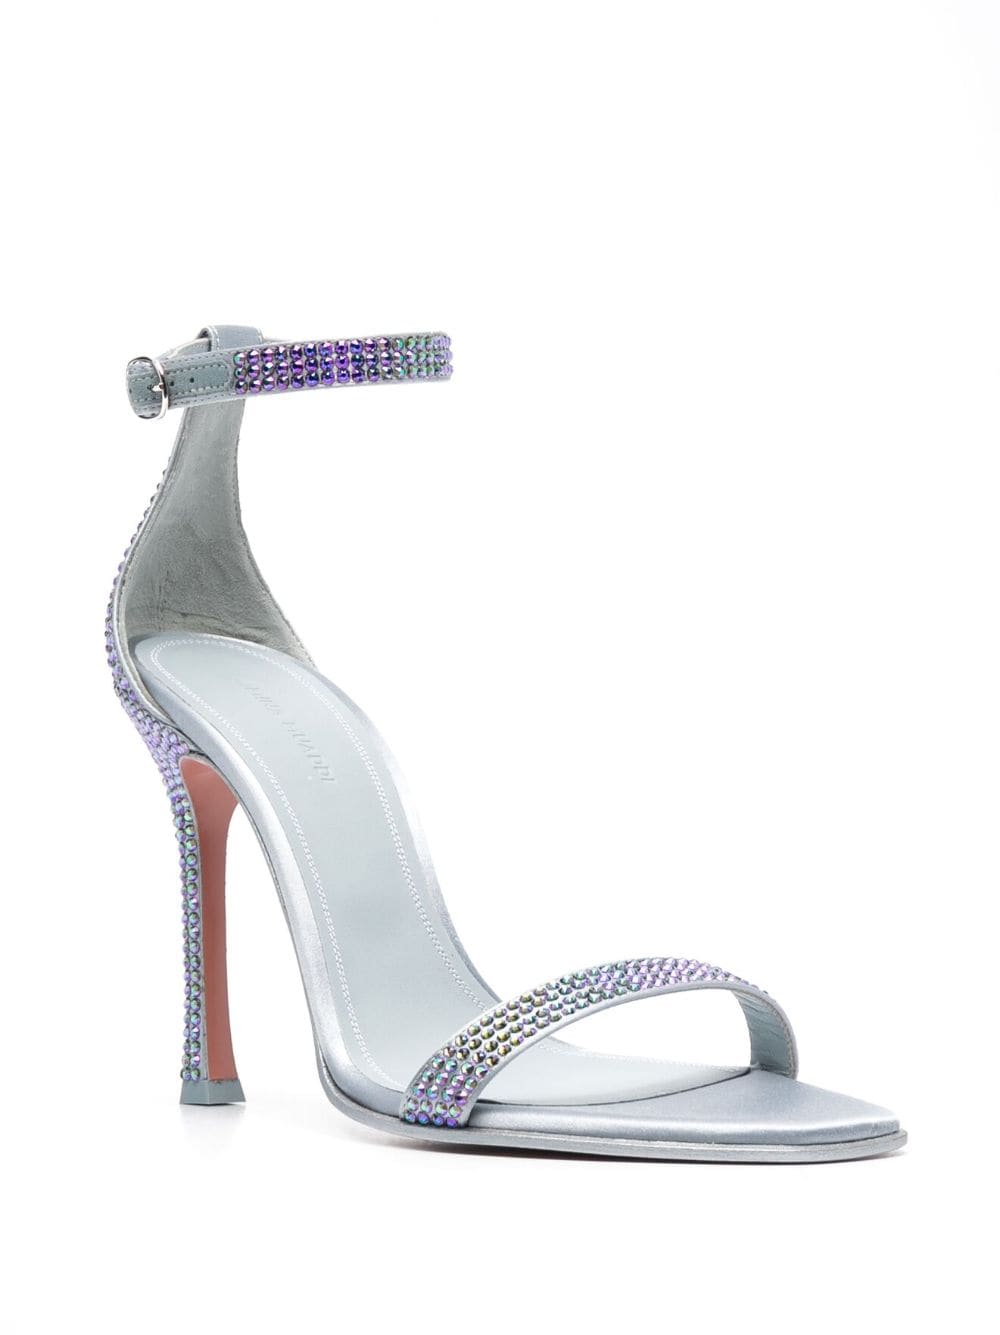 Amina Muaddi Kim 115mm crystal-embellished Sandals - Farfetch